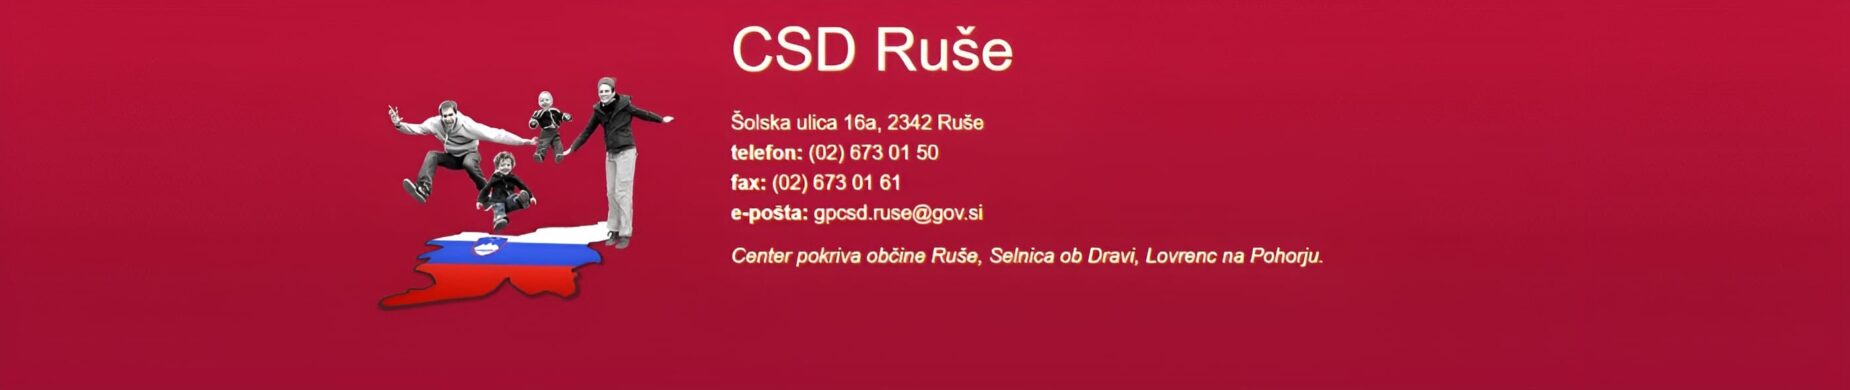 CSD Ruse slider